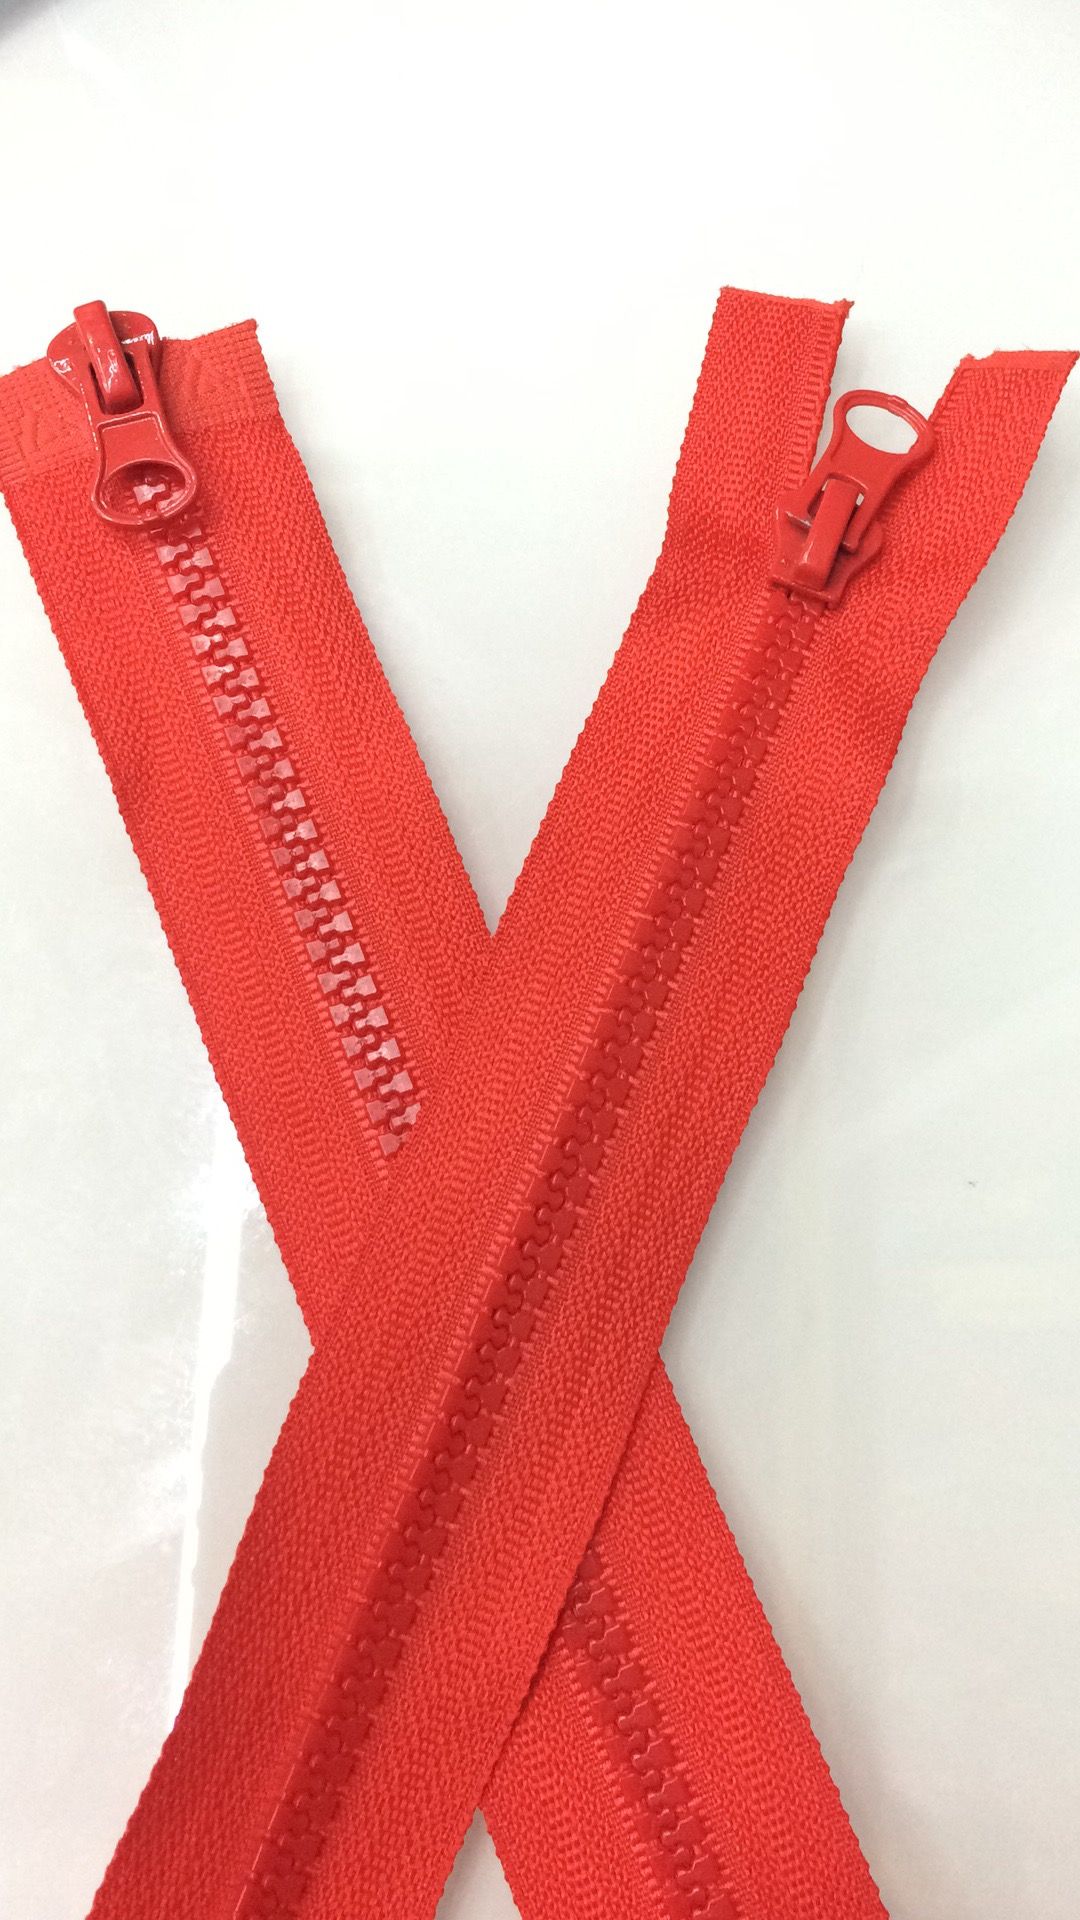 Yiwu Huada Die Casting Hongyu Zipper Factory Direct Sales 5# Resin Open/Closed Double Open Tail Zipper